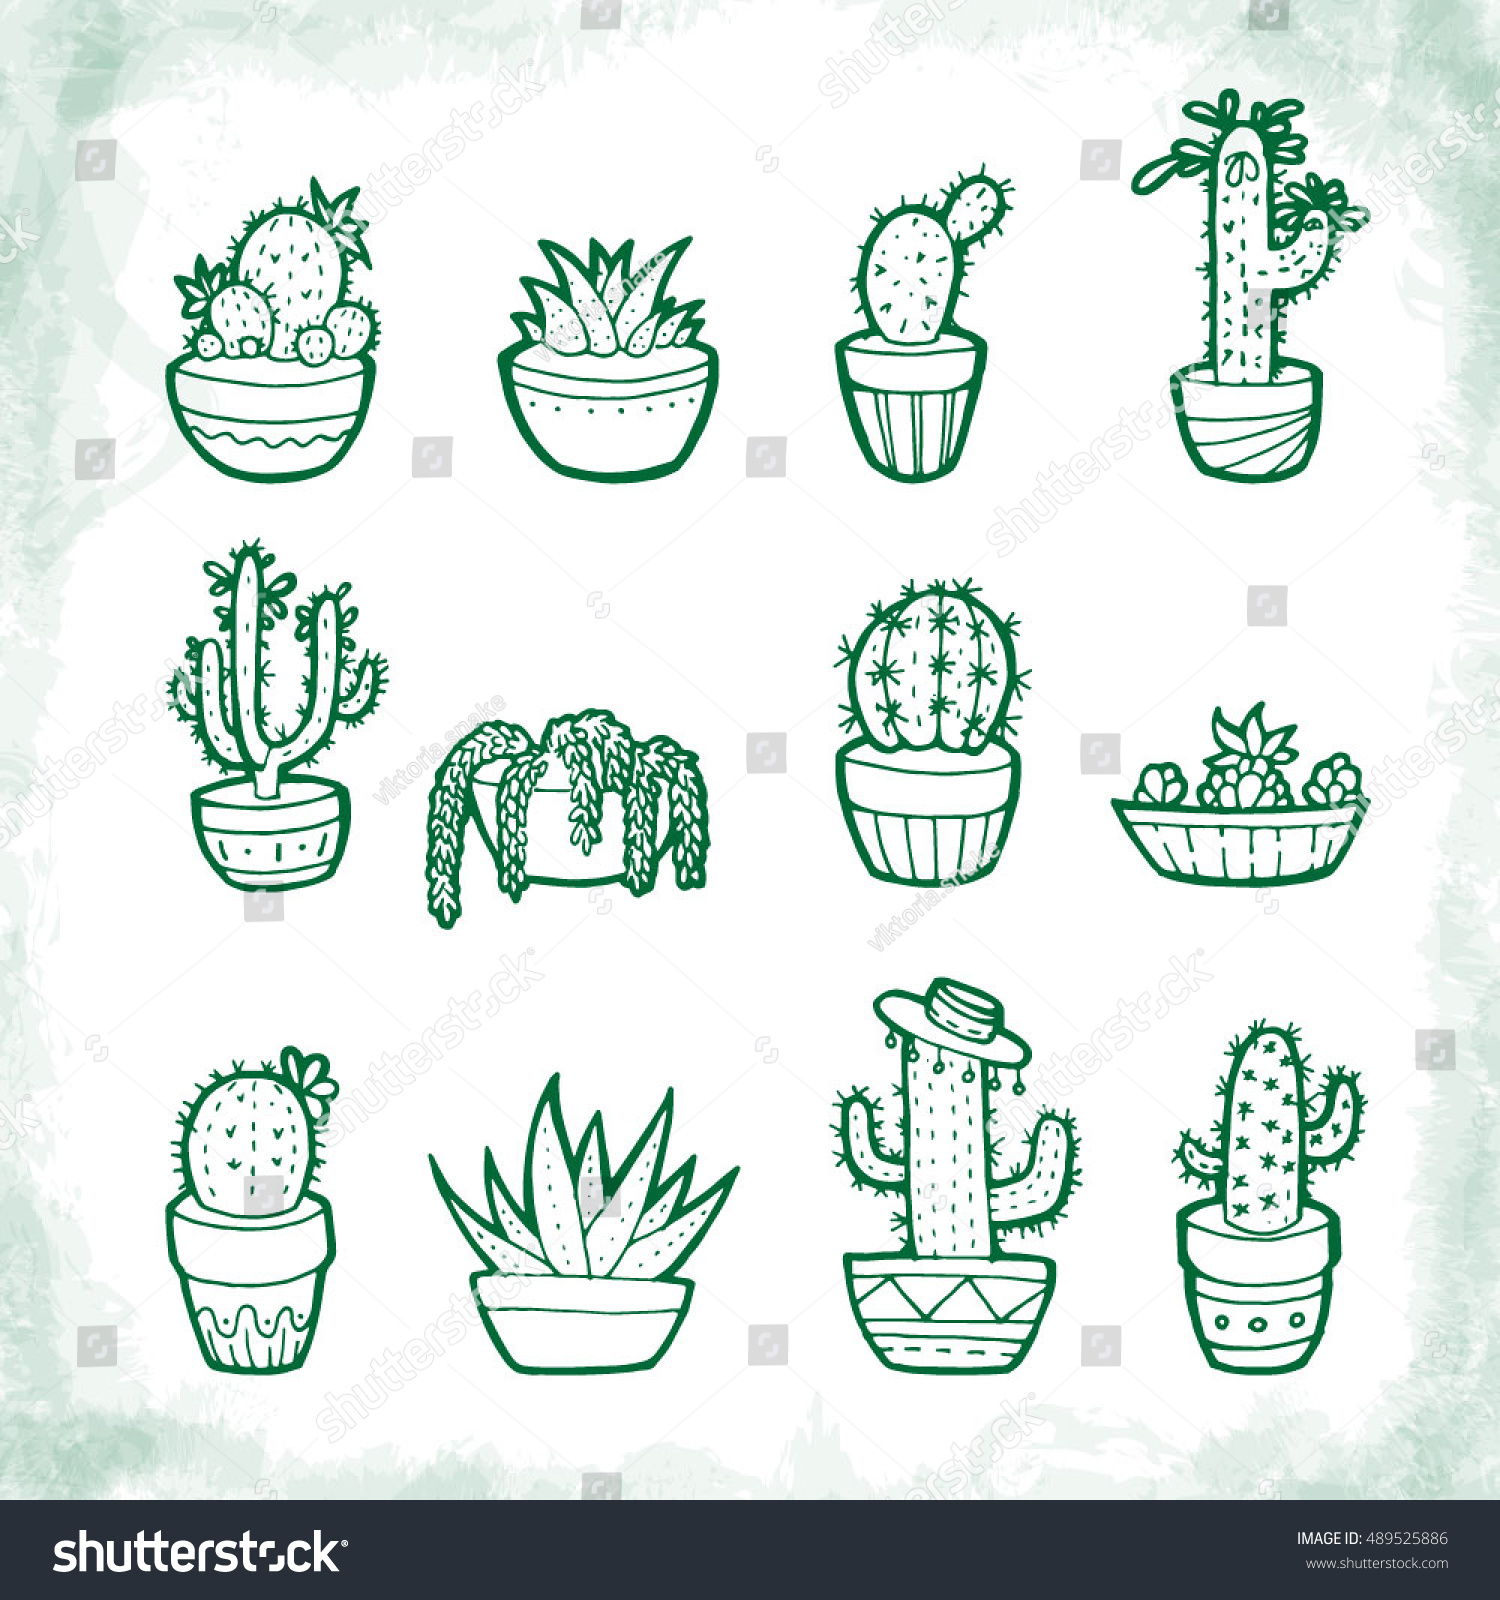 Doodle Cactus Set Hand Drawn Vector Stock Vector 489525886 - Shutterstock